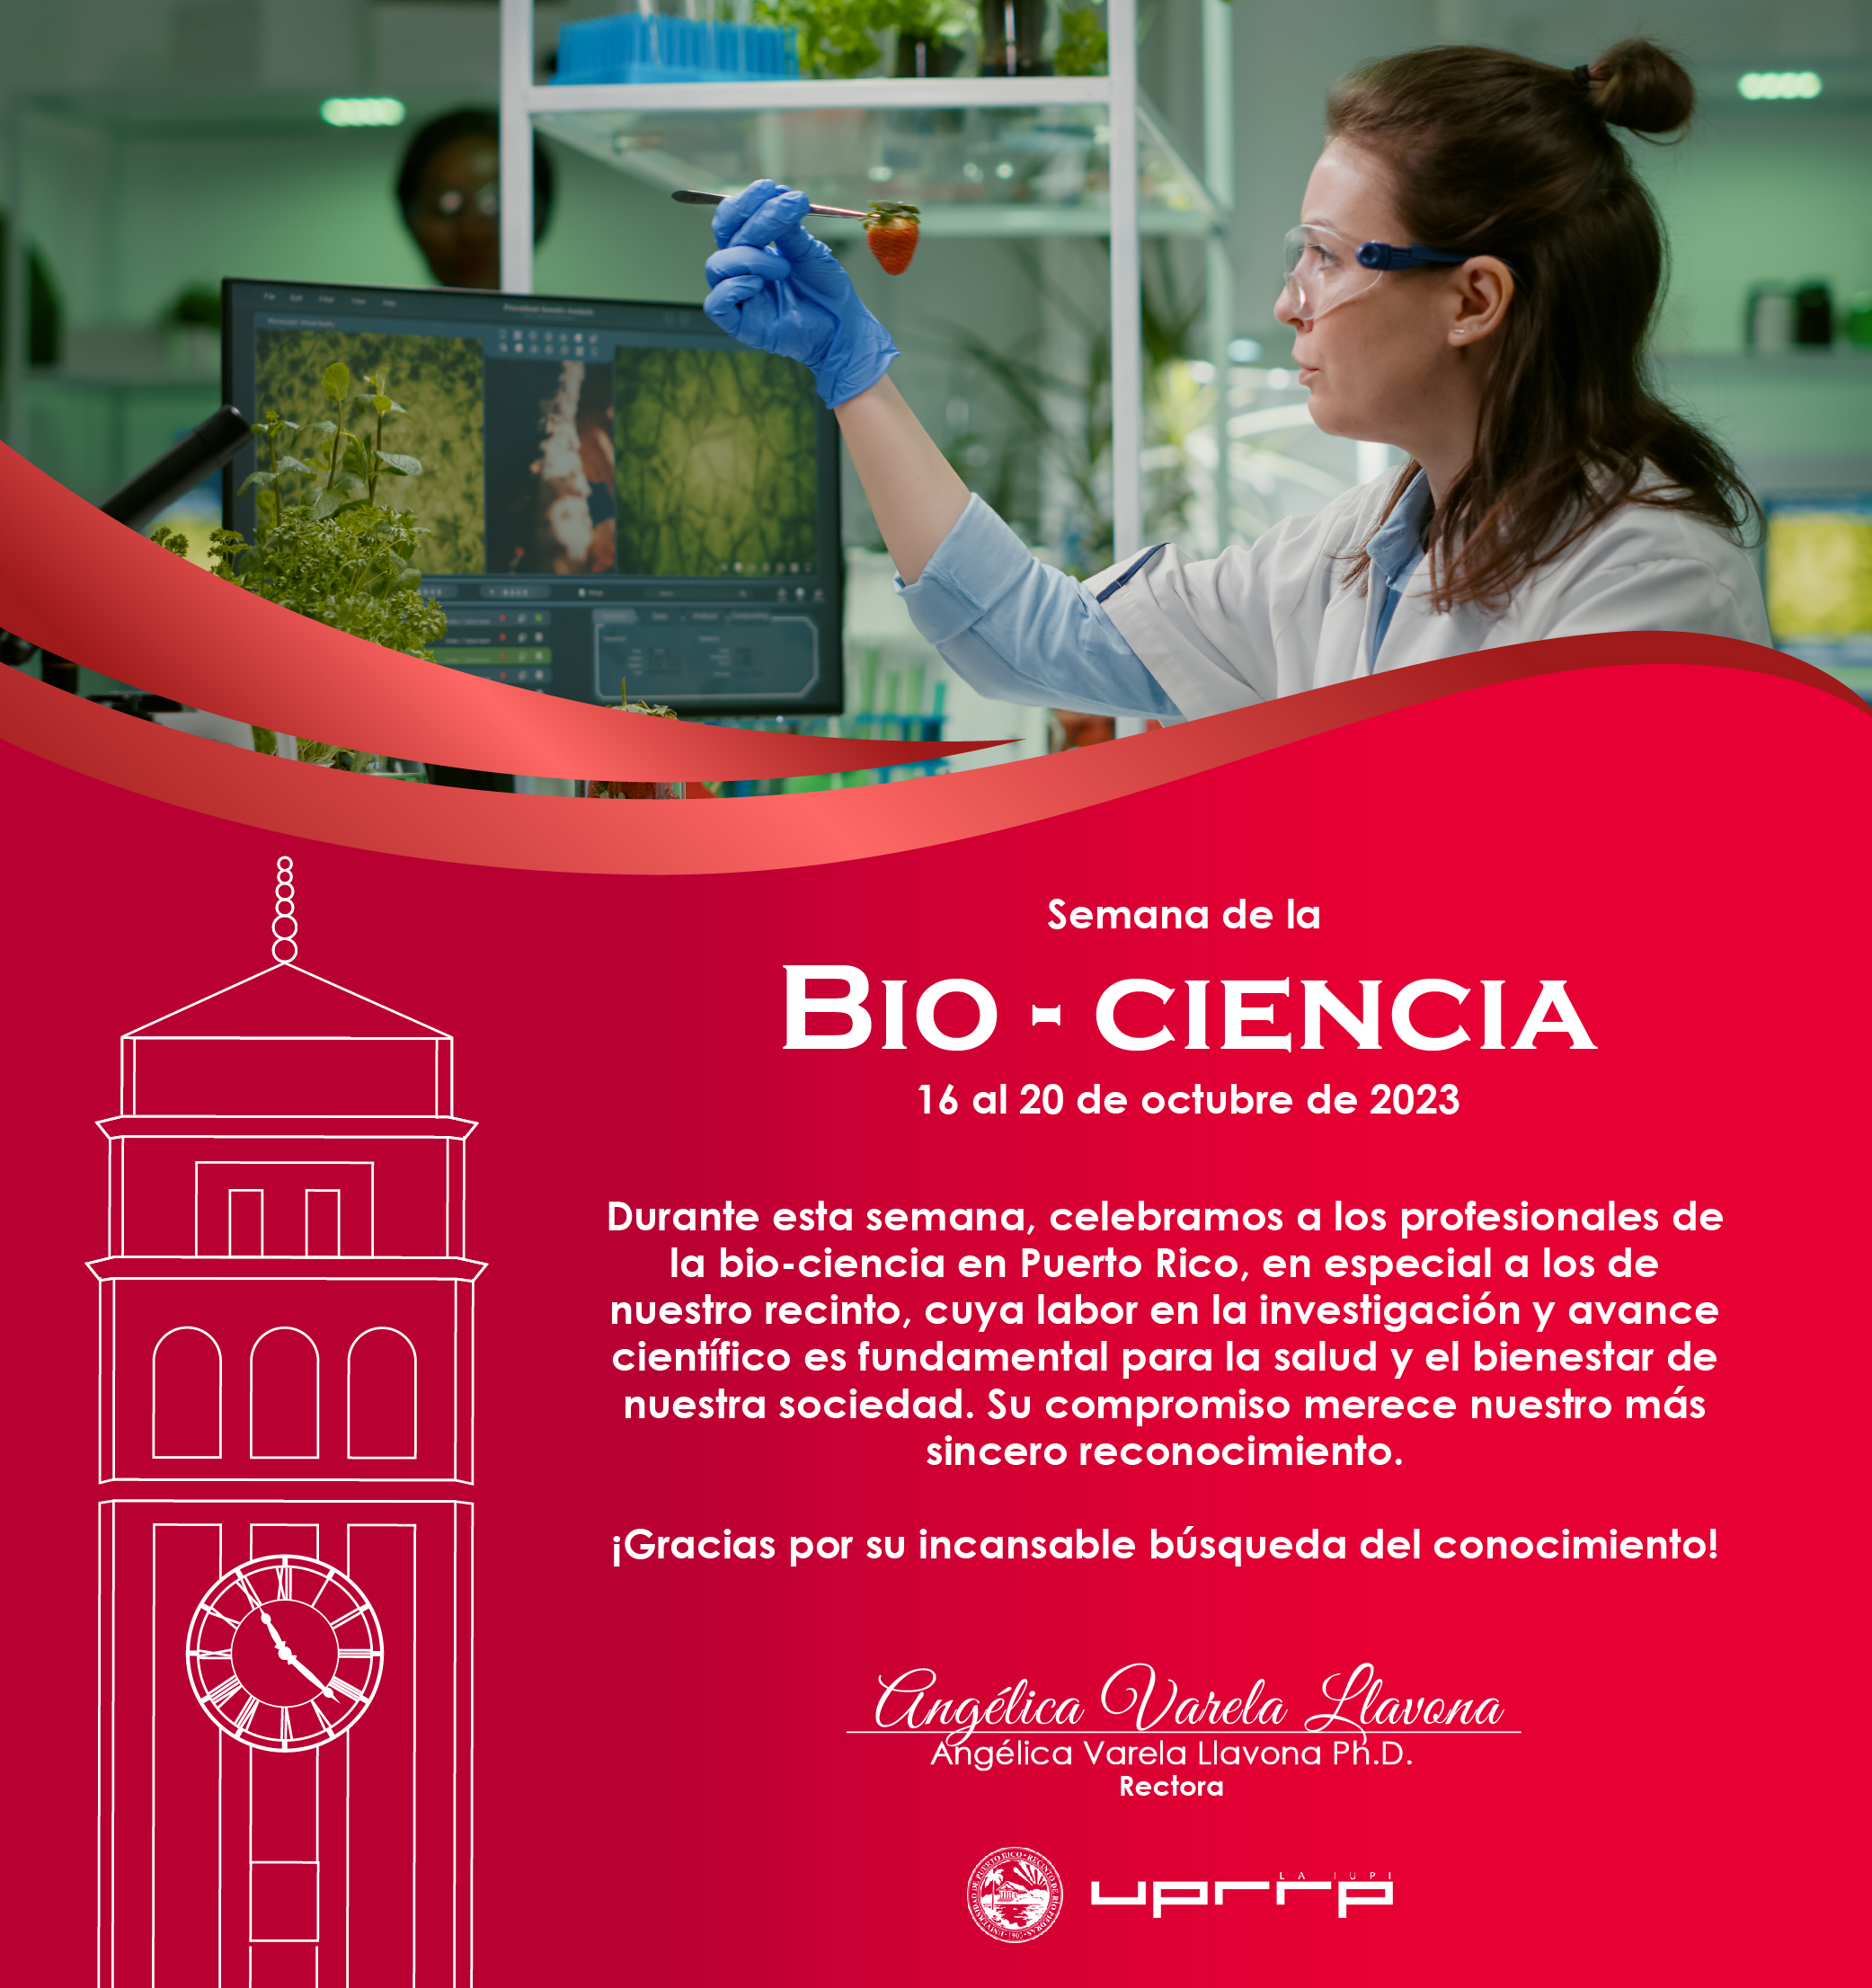 Felicitaciones en la semana de la Bio-Ciencia